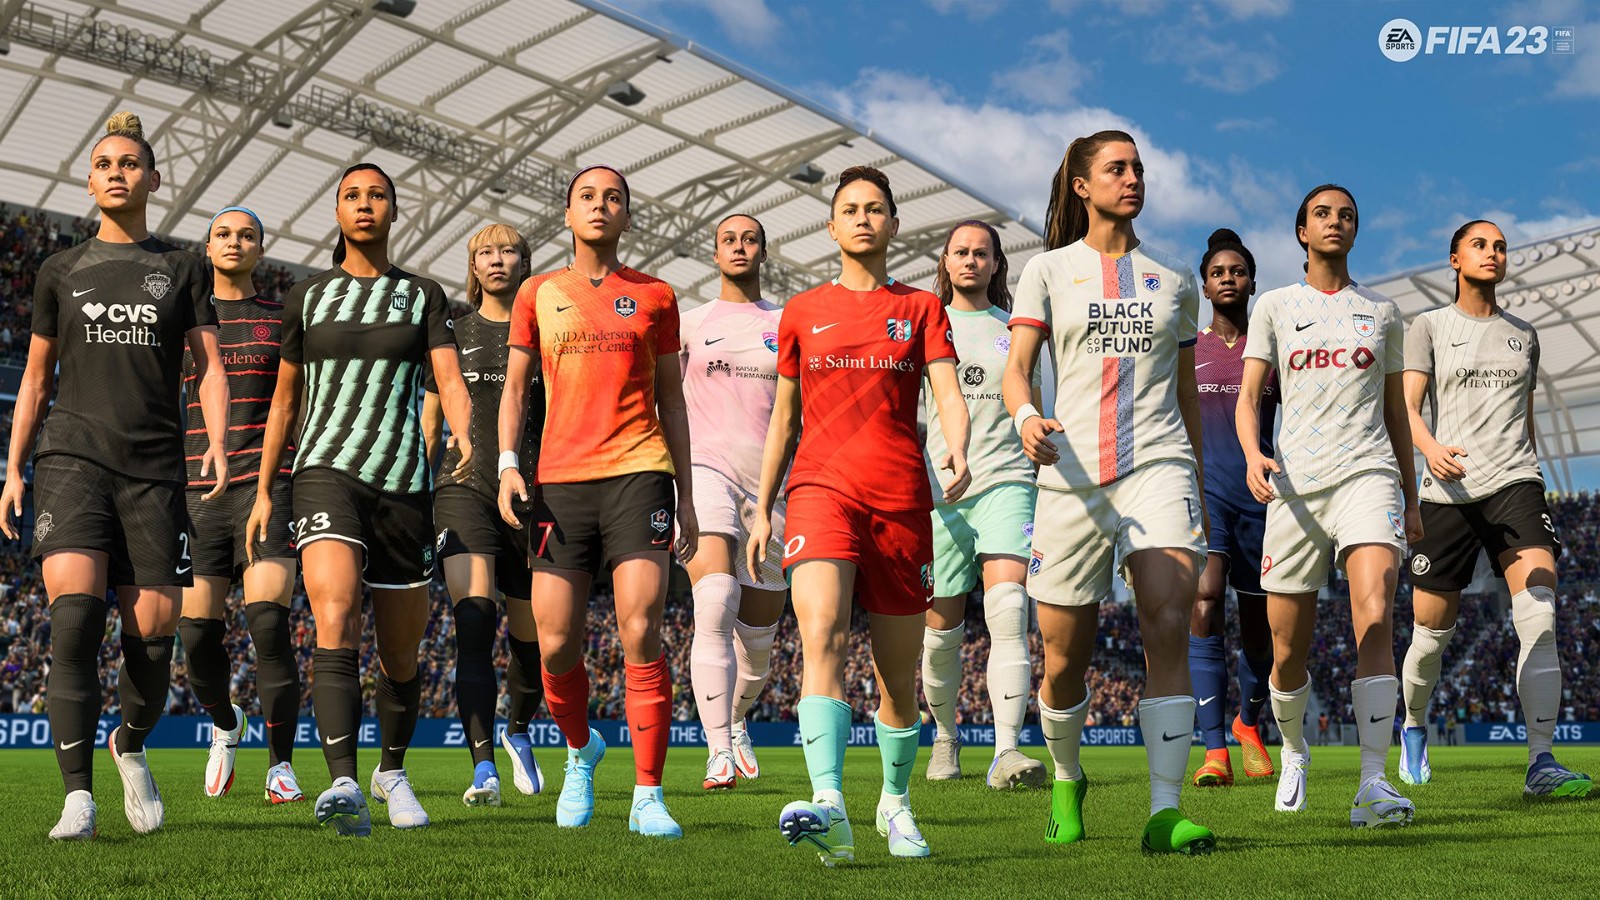 《FIFA 23》将添加美国女足联赛 3月15日上线 二次世界 第2张